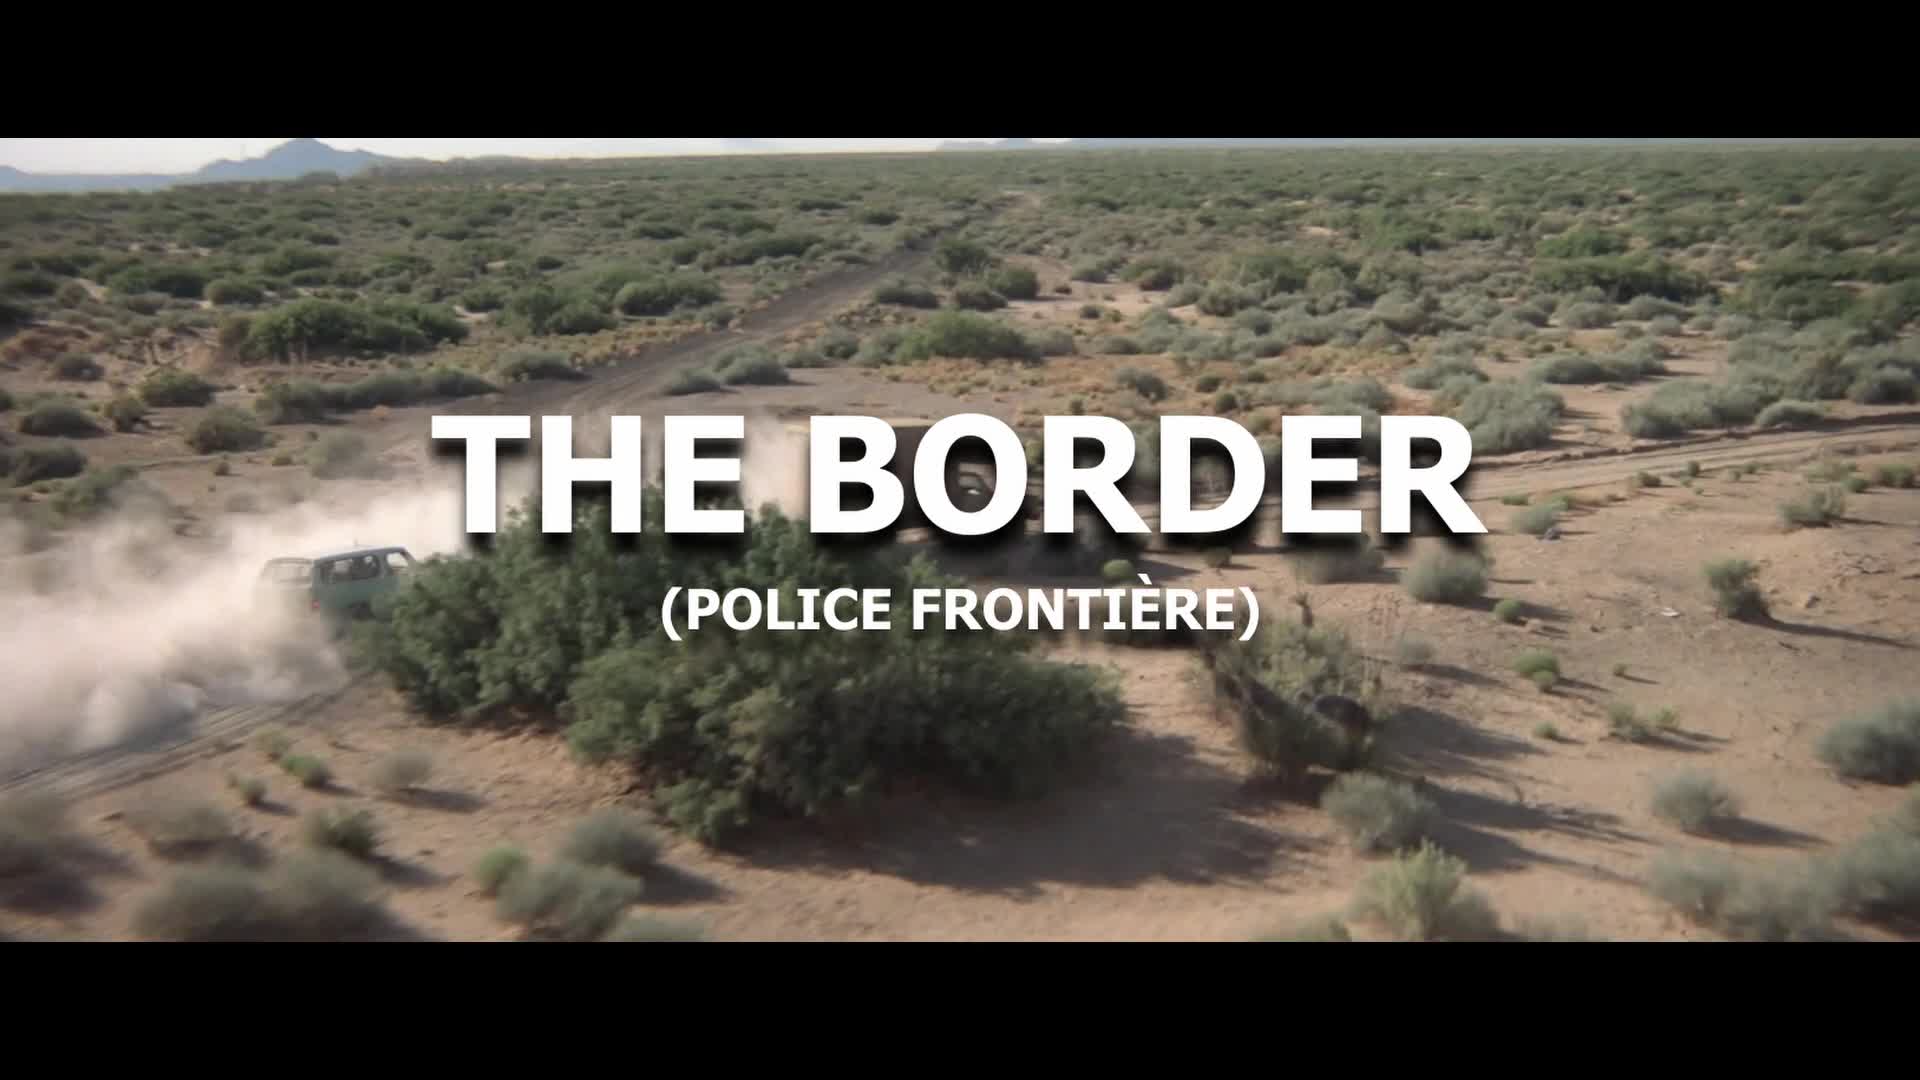 Extrait vidéo du film  The Border (Police frontière)